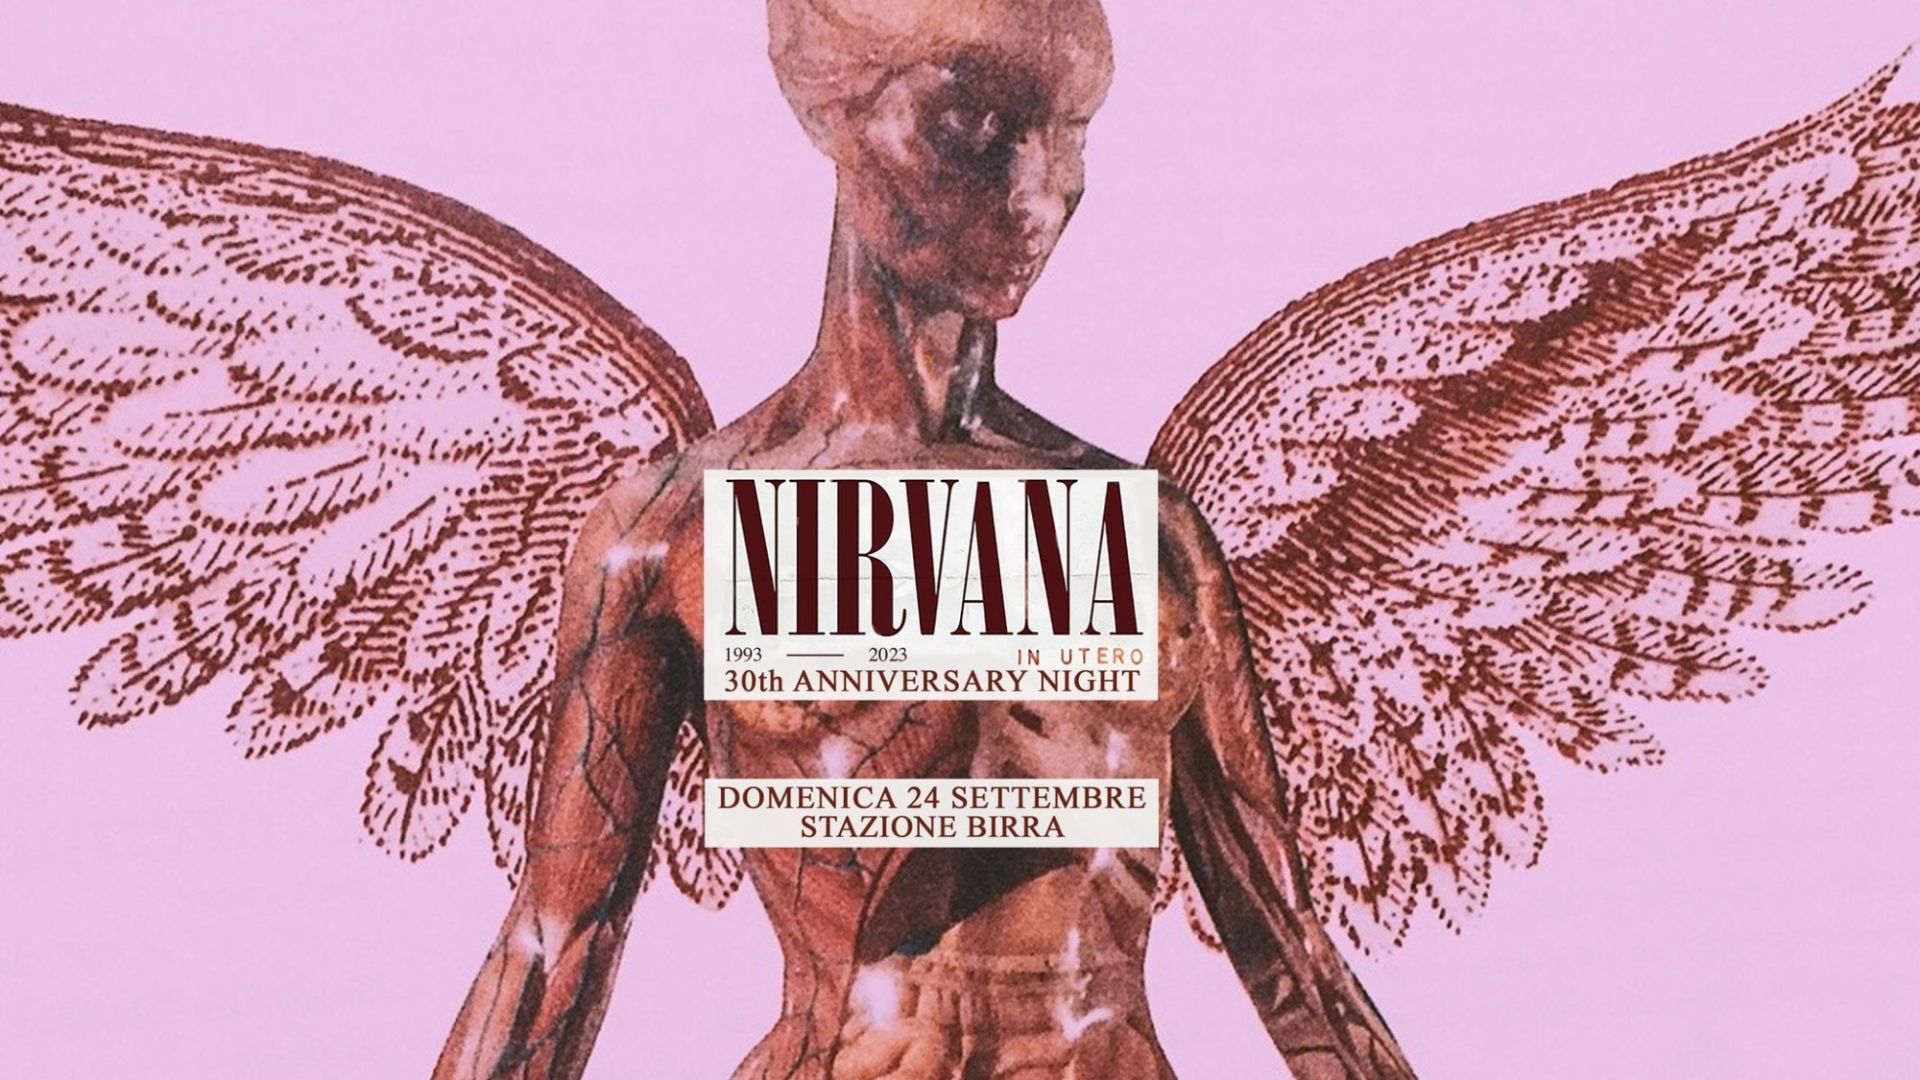 30 Years In Utero - Nirvana